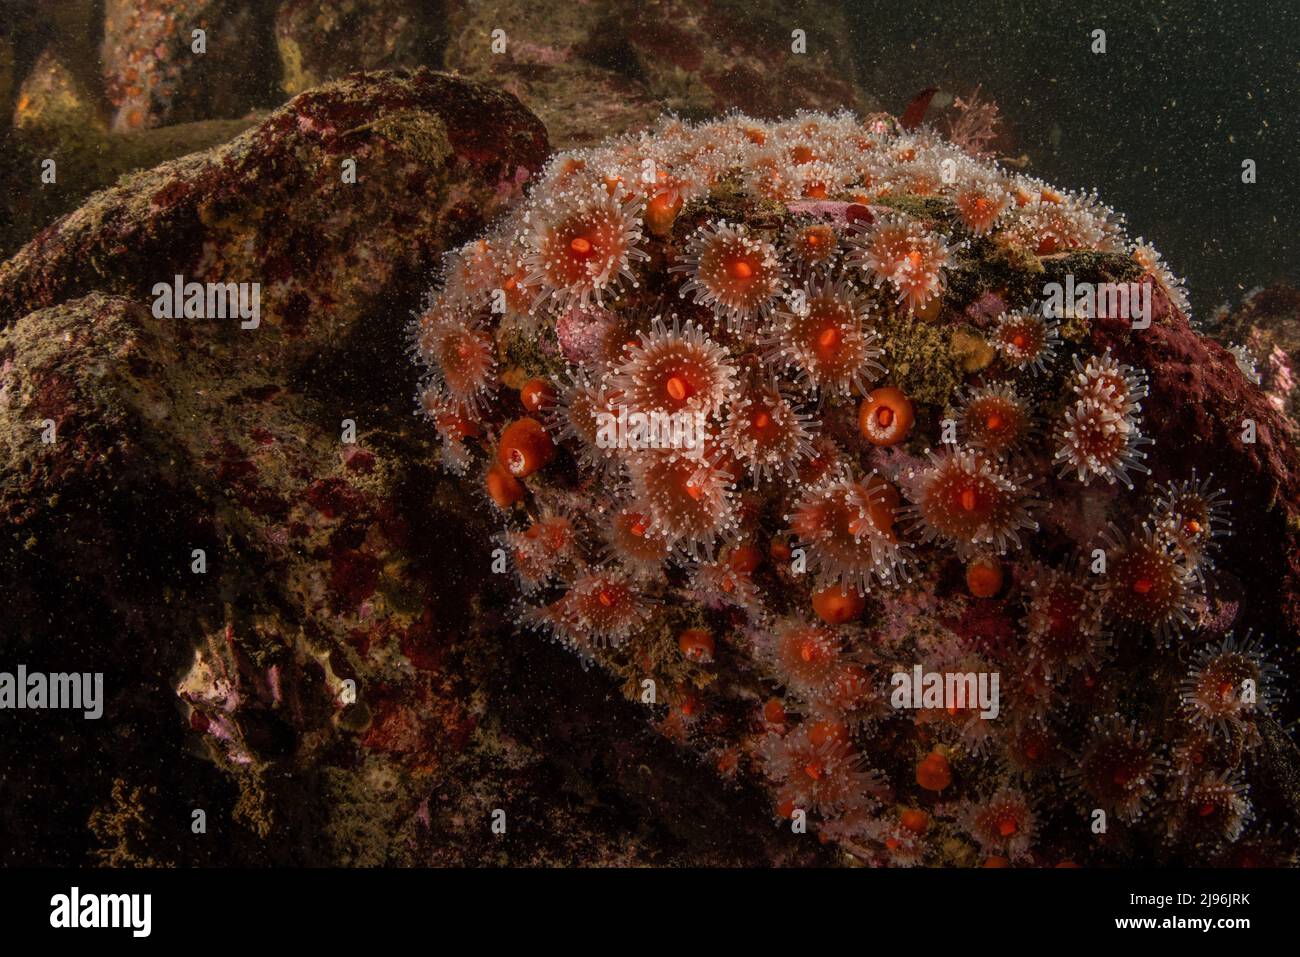 Eine Kolonie von Erdbeeranemonen (Corynactis californica) auf dem pazifischen Meeresboden in Monterey Bay, Kalifornien, Nordamerika. Stockfoto